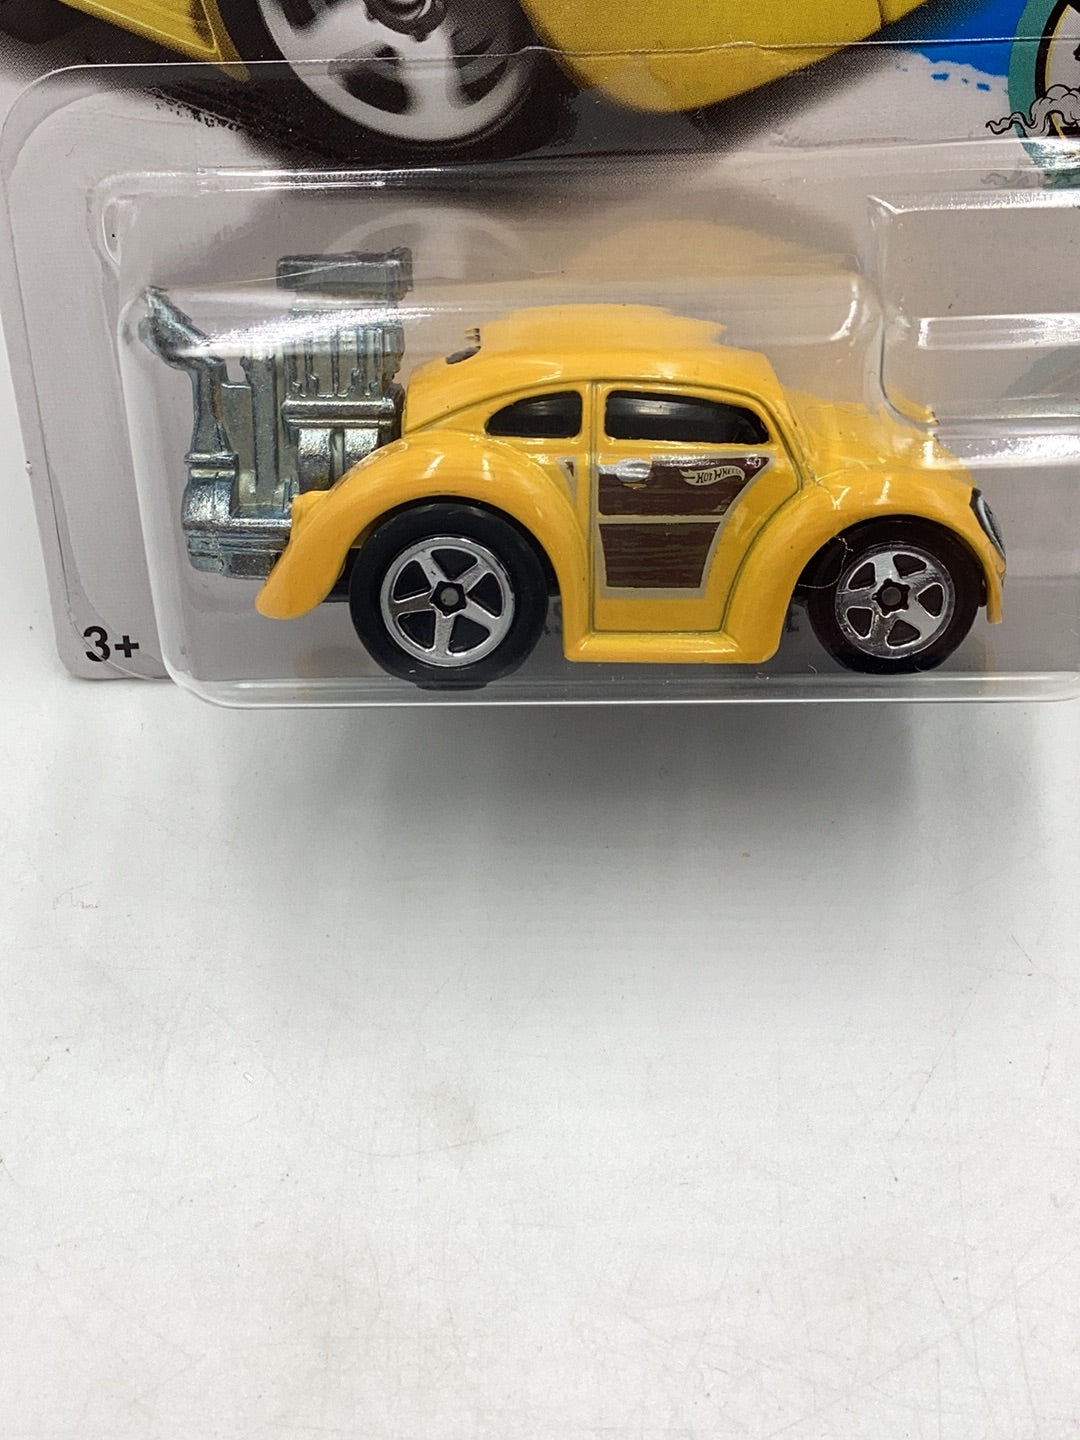 2017 hot wheels #172 Volkswagen Beetle Tooned 96E